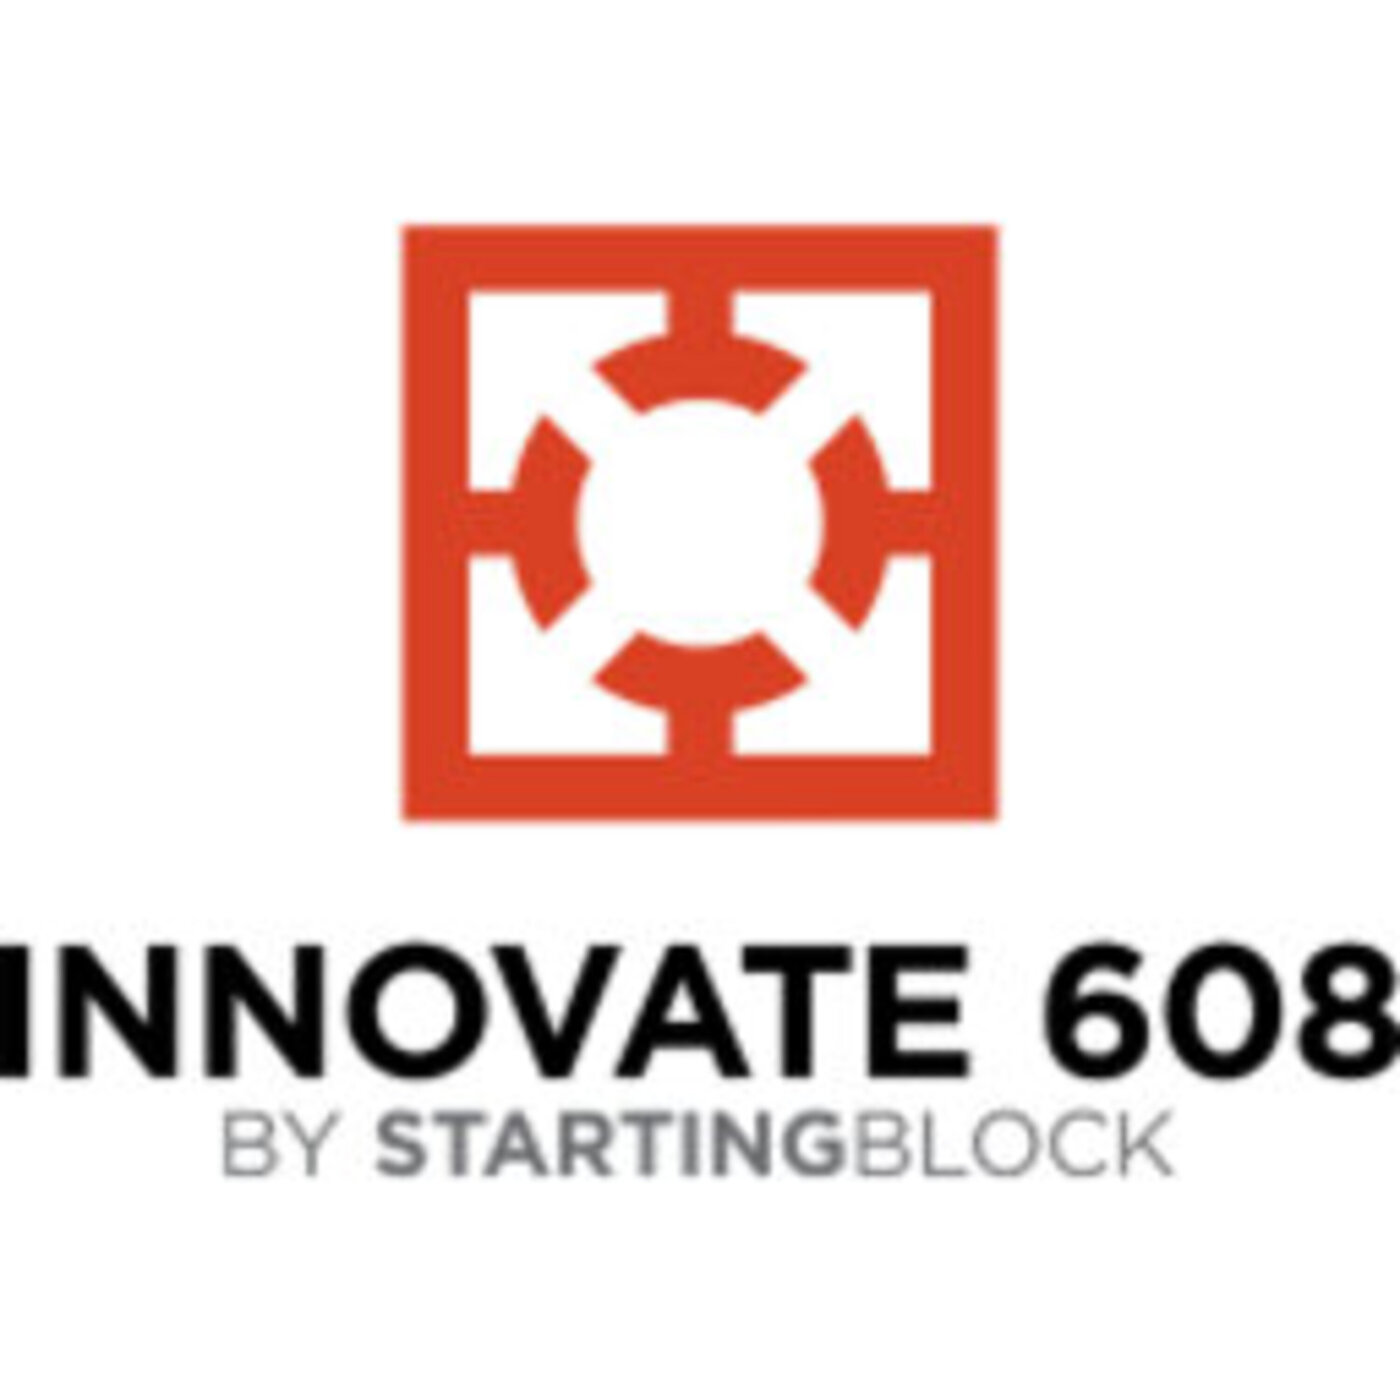 Innovate608: Jake Pollastrini | gener8tor's CS Nest Program